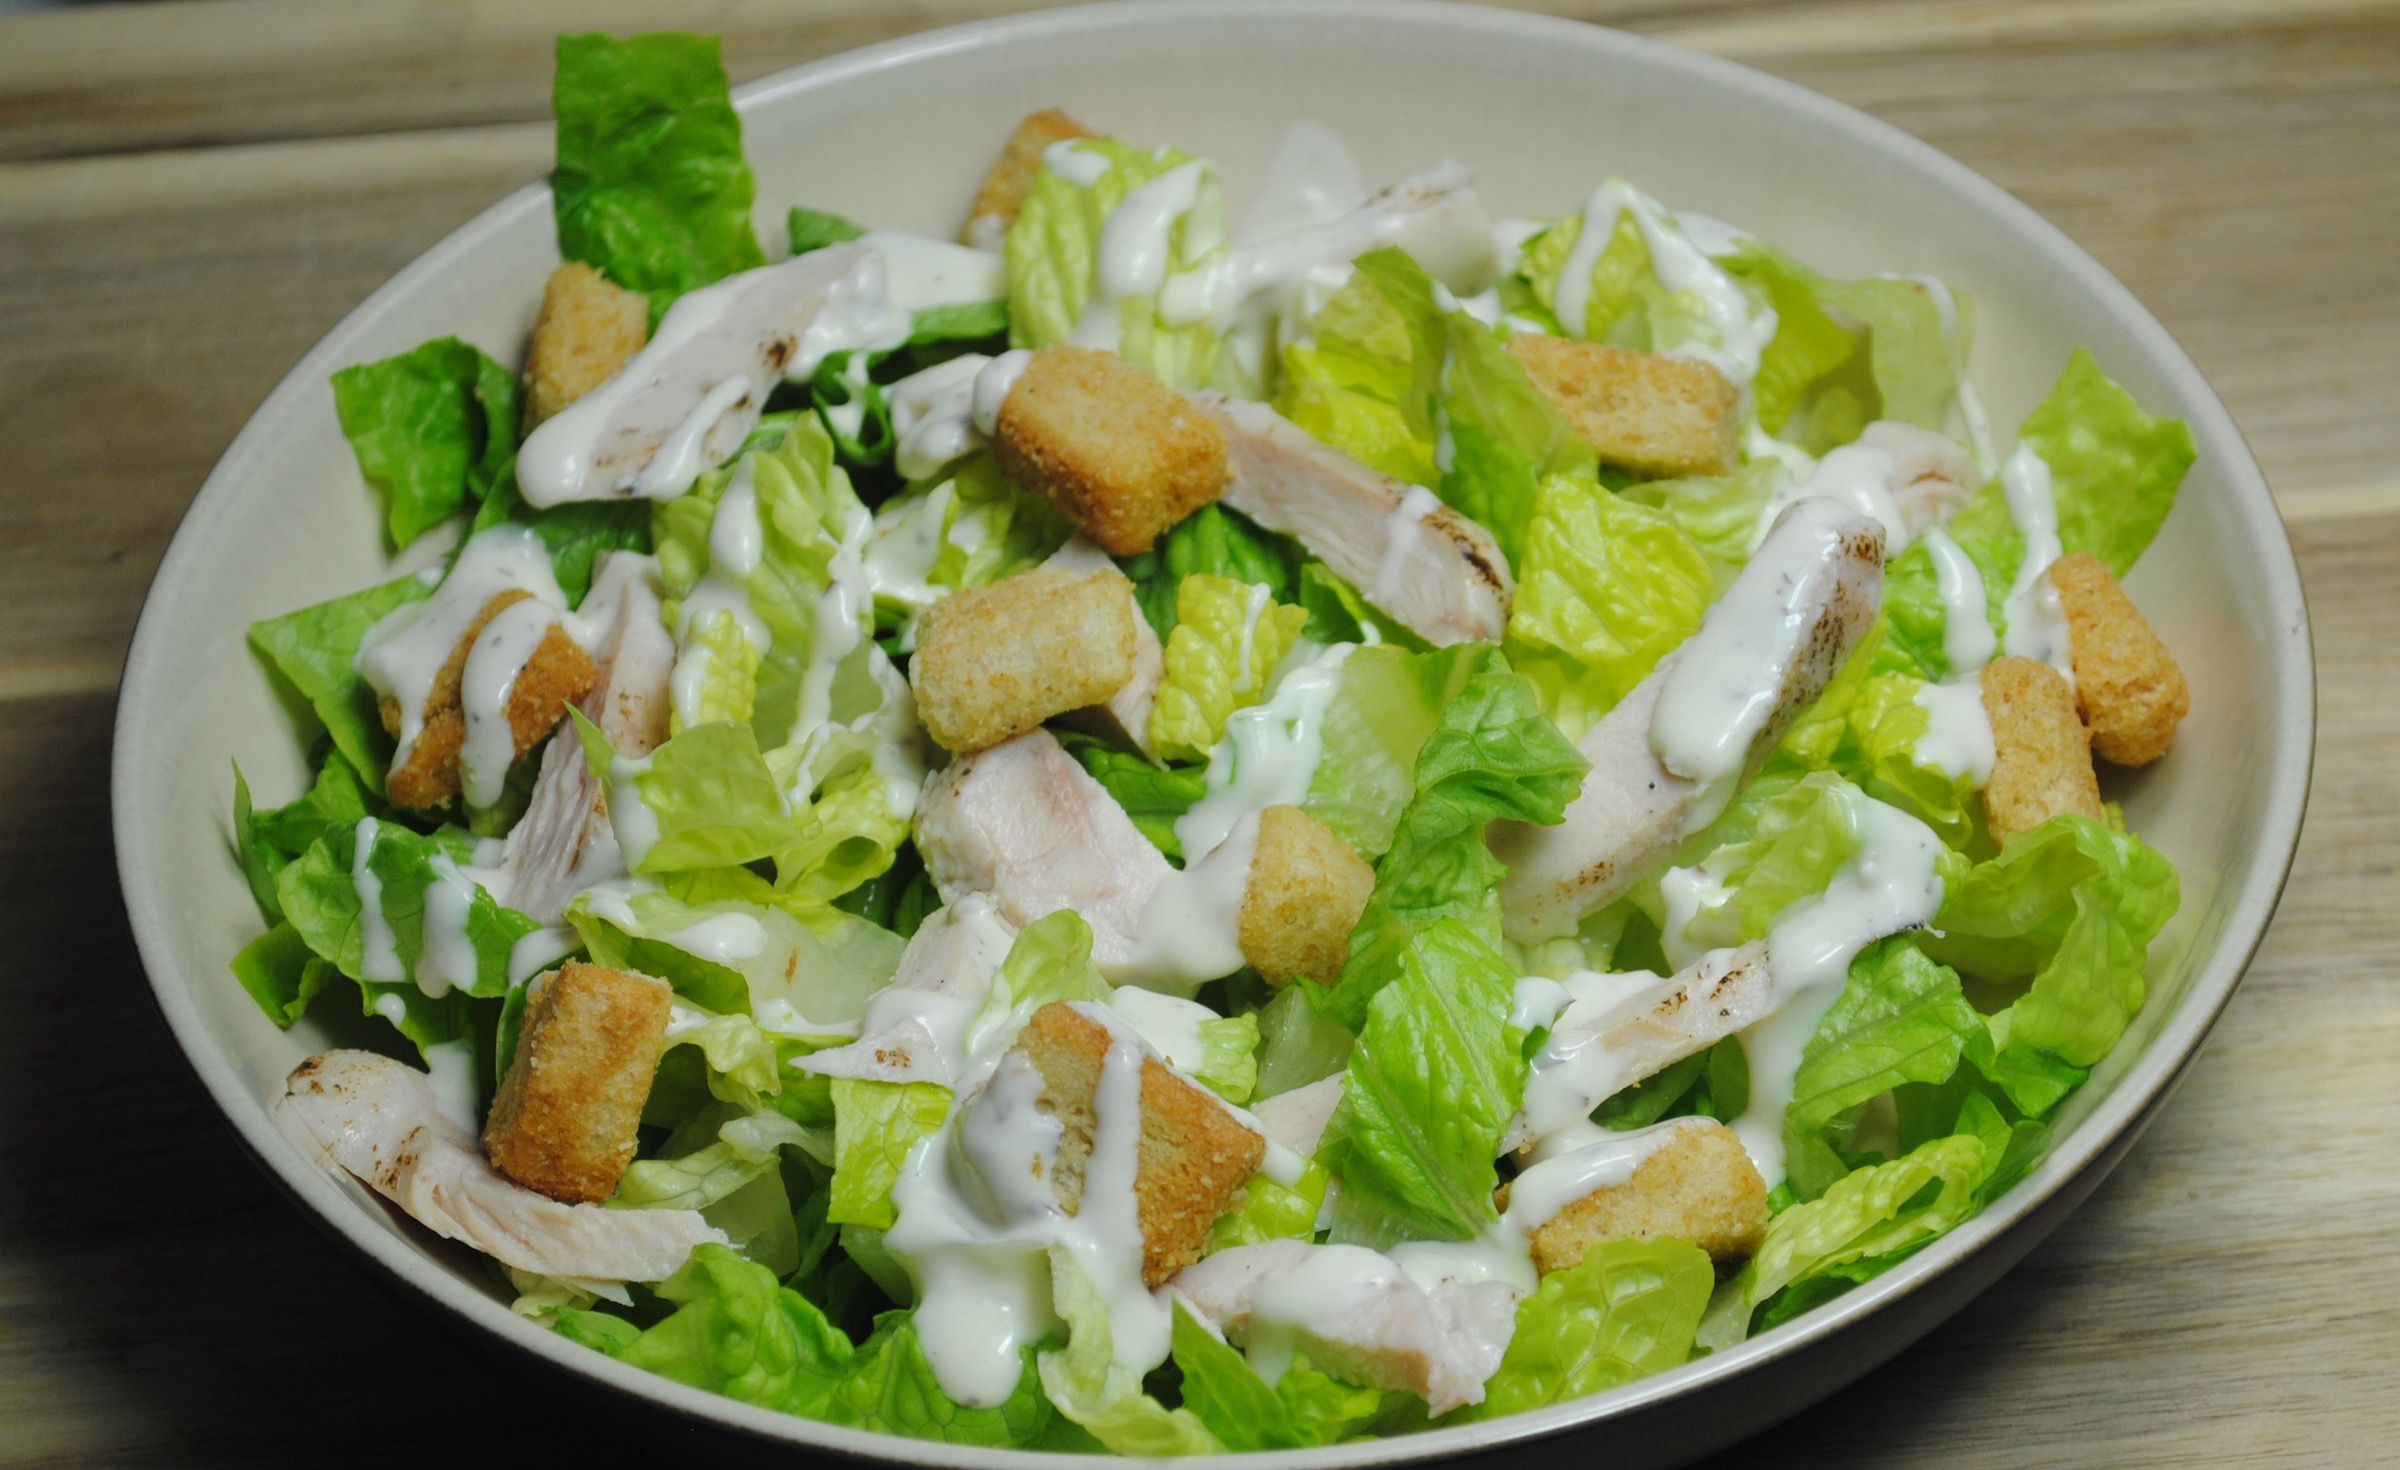 Chicken Caesar salad recipe - 3